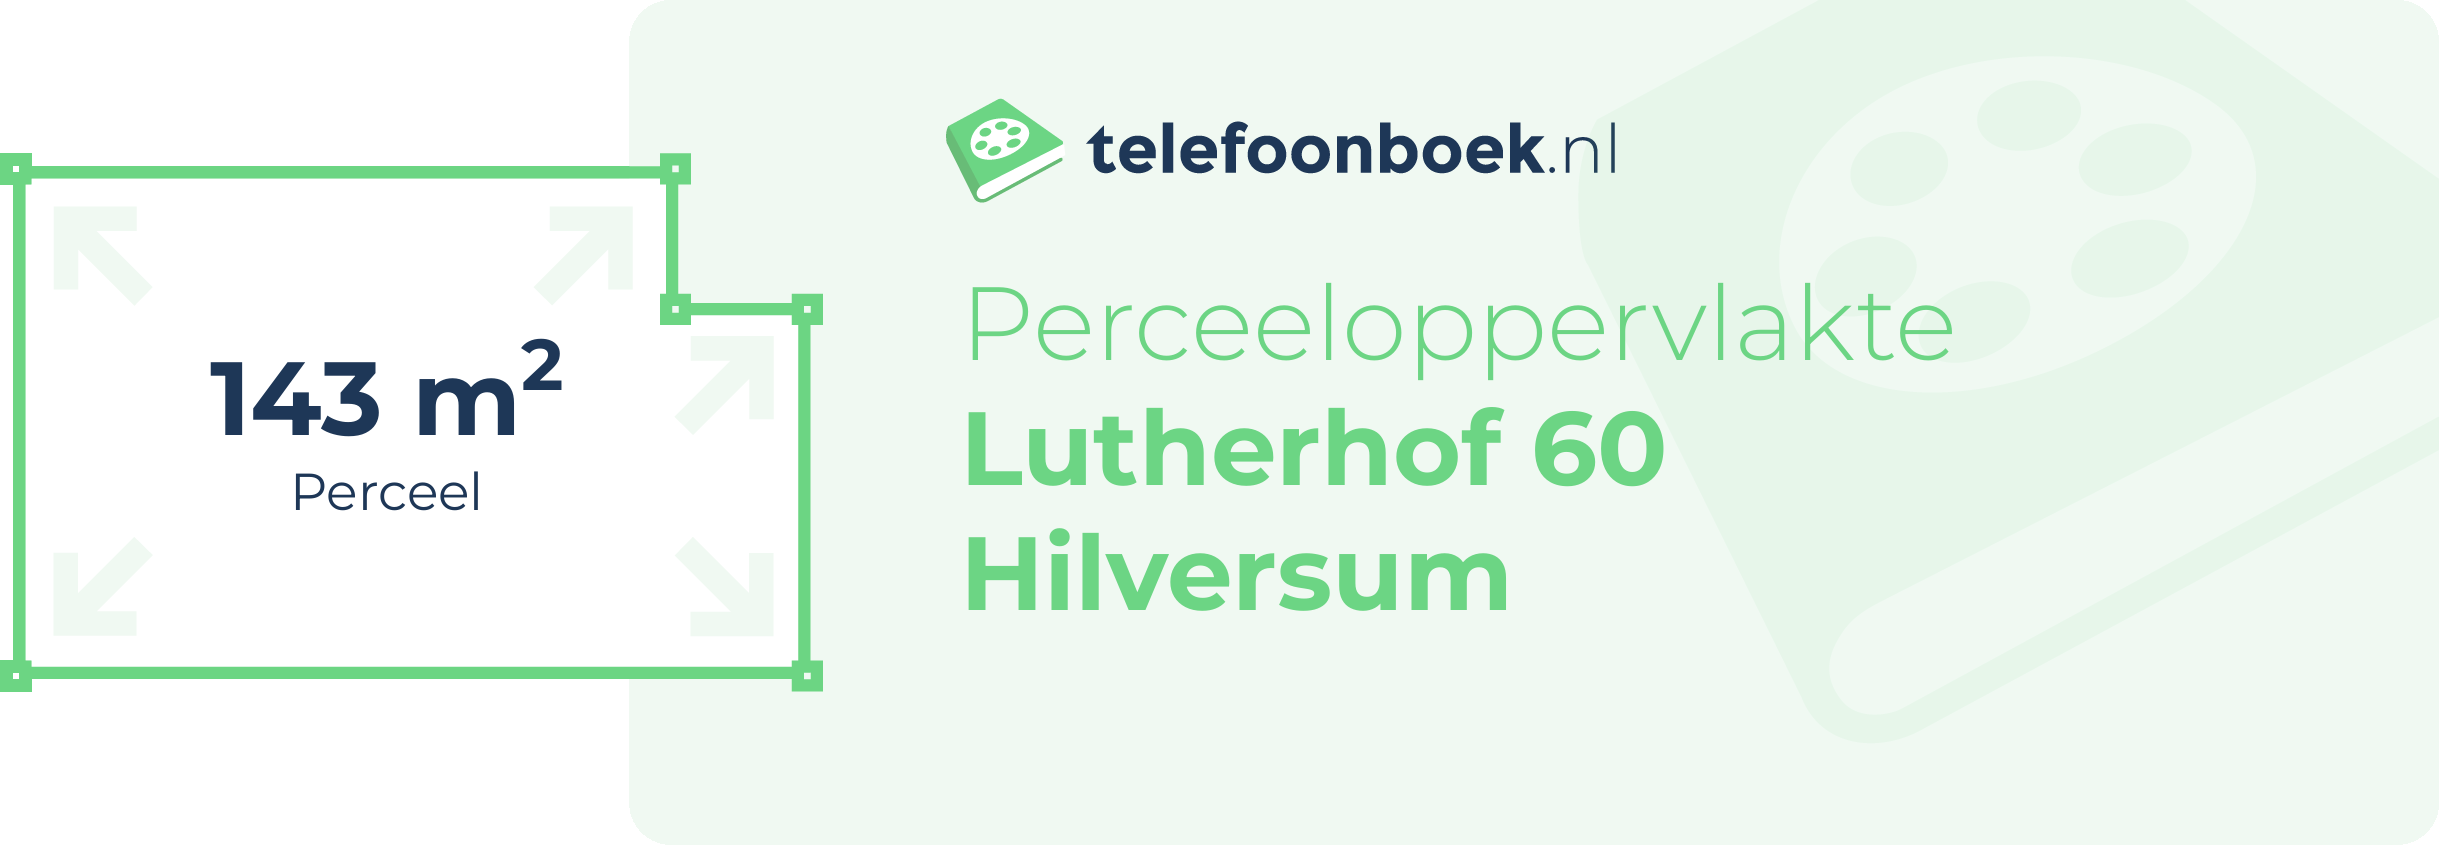 Perceeloppervlakte Lutherhof 60 Hilversum